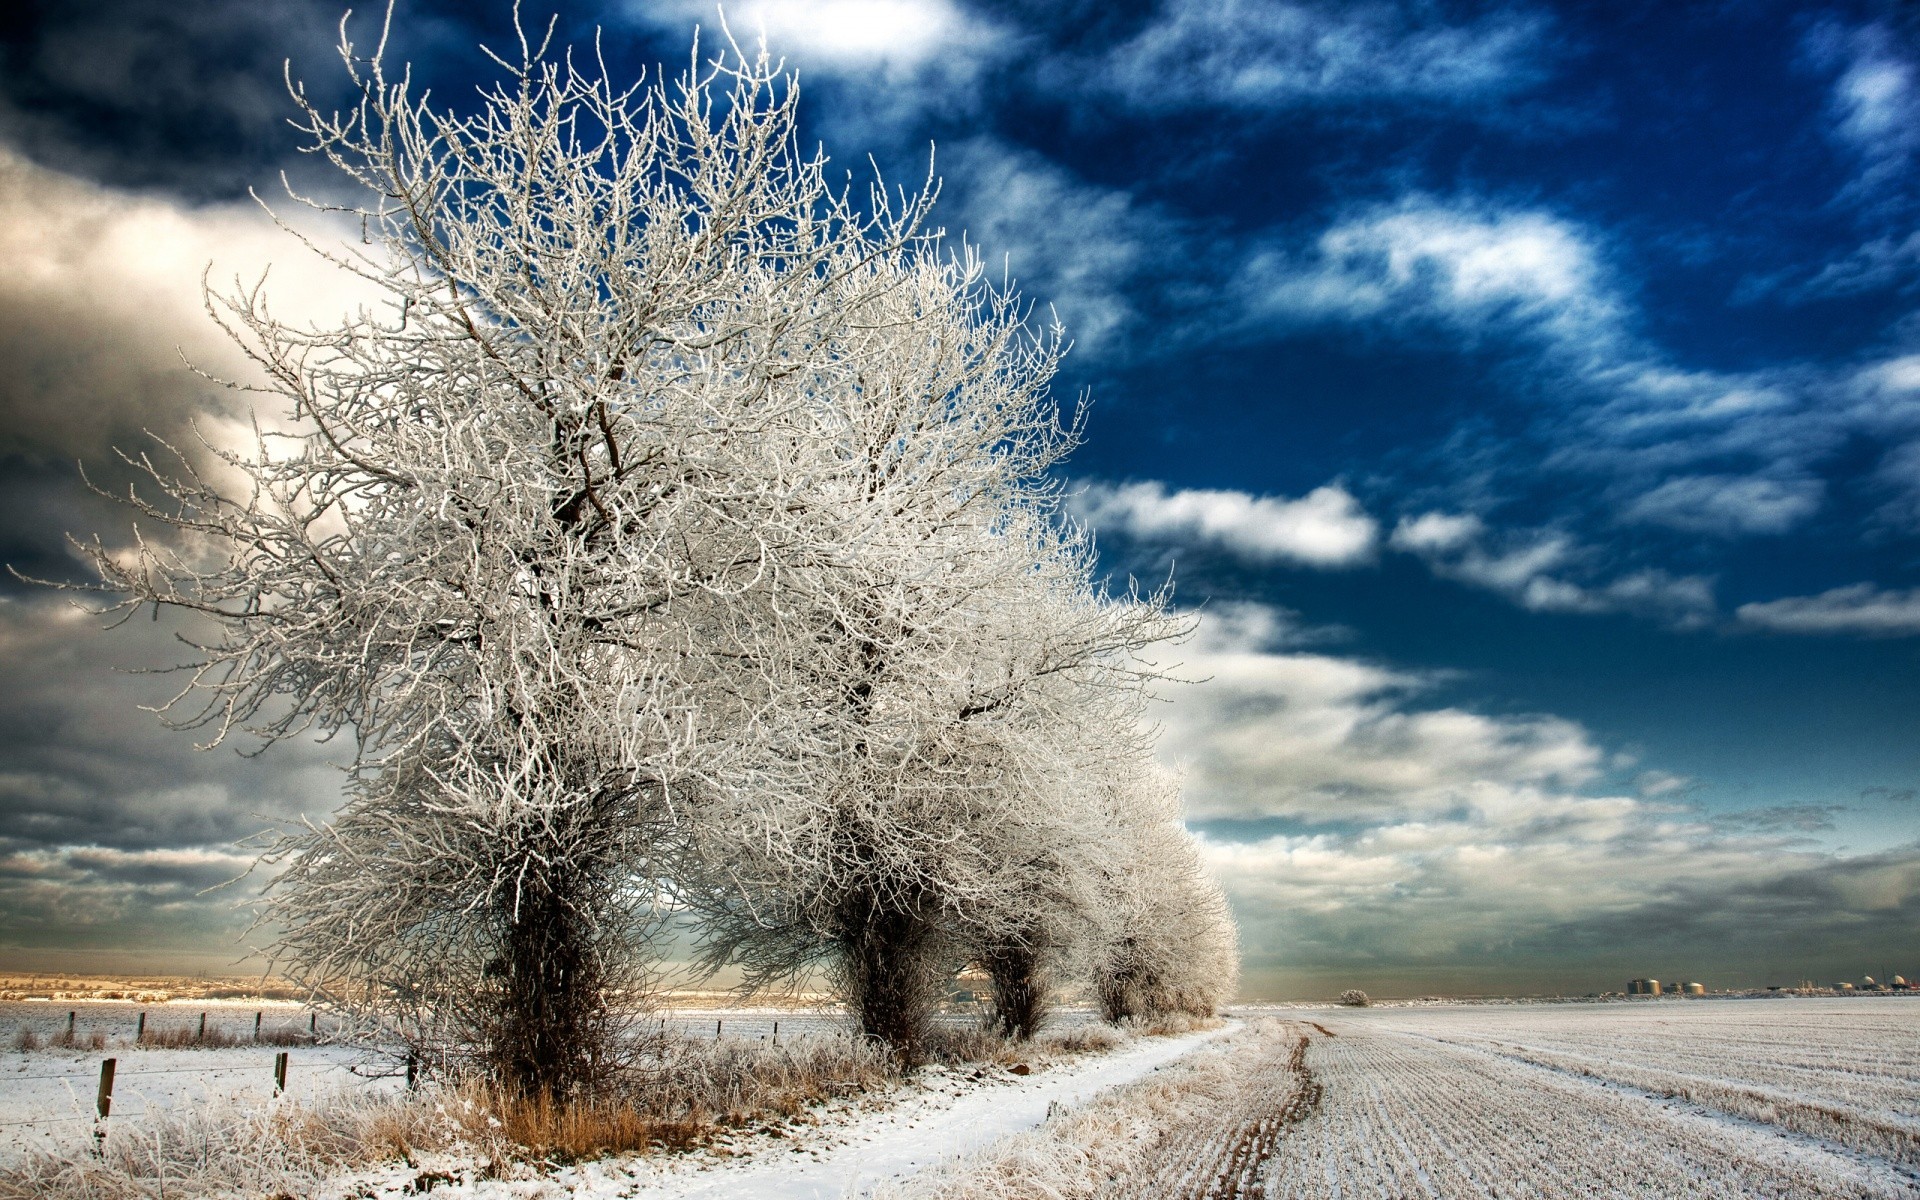 зима снег мороз природа небо дерево пейзаж замороженные холодная сезон на открытом воздухе погода хорошую погоду лед древесины сельских солнце яркий сельской местности